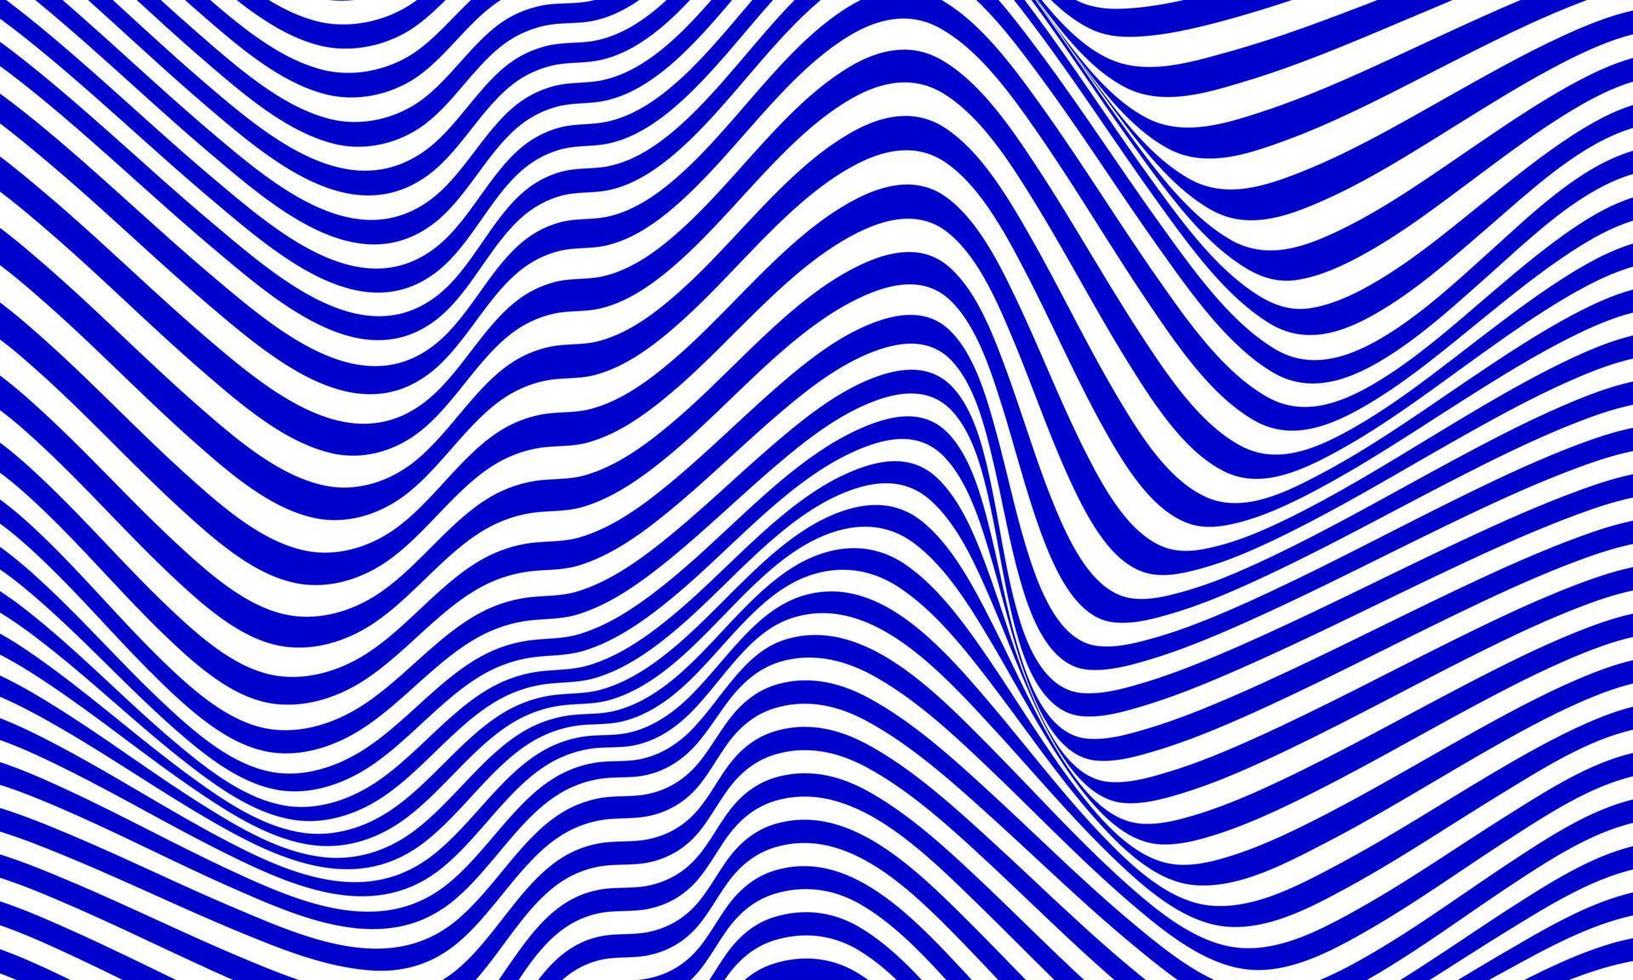 abstracte streepachtergrond in wit en blauw met golvend lijnenpatroon. vector